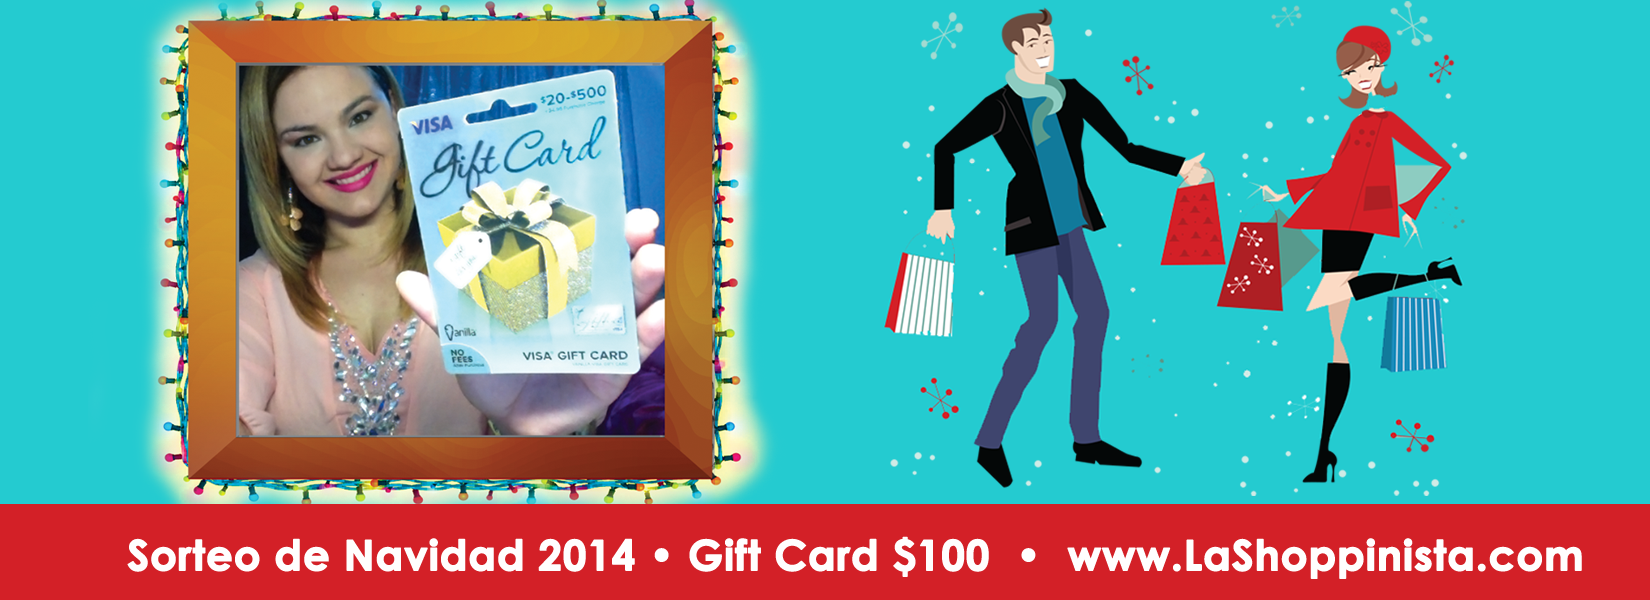 Sorteo Internacional de Navidad 2014- Gift Card $100